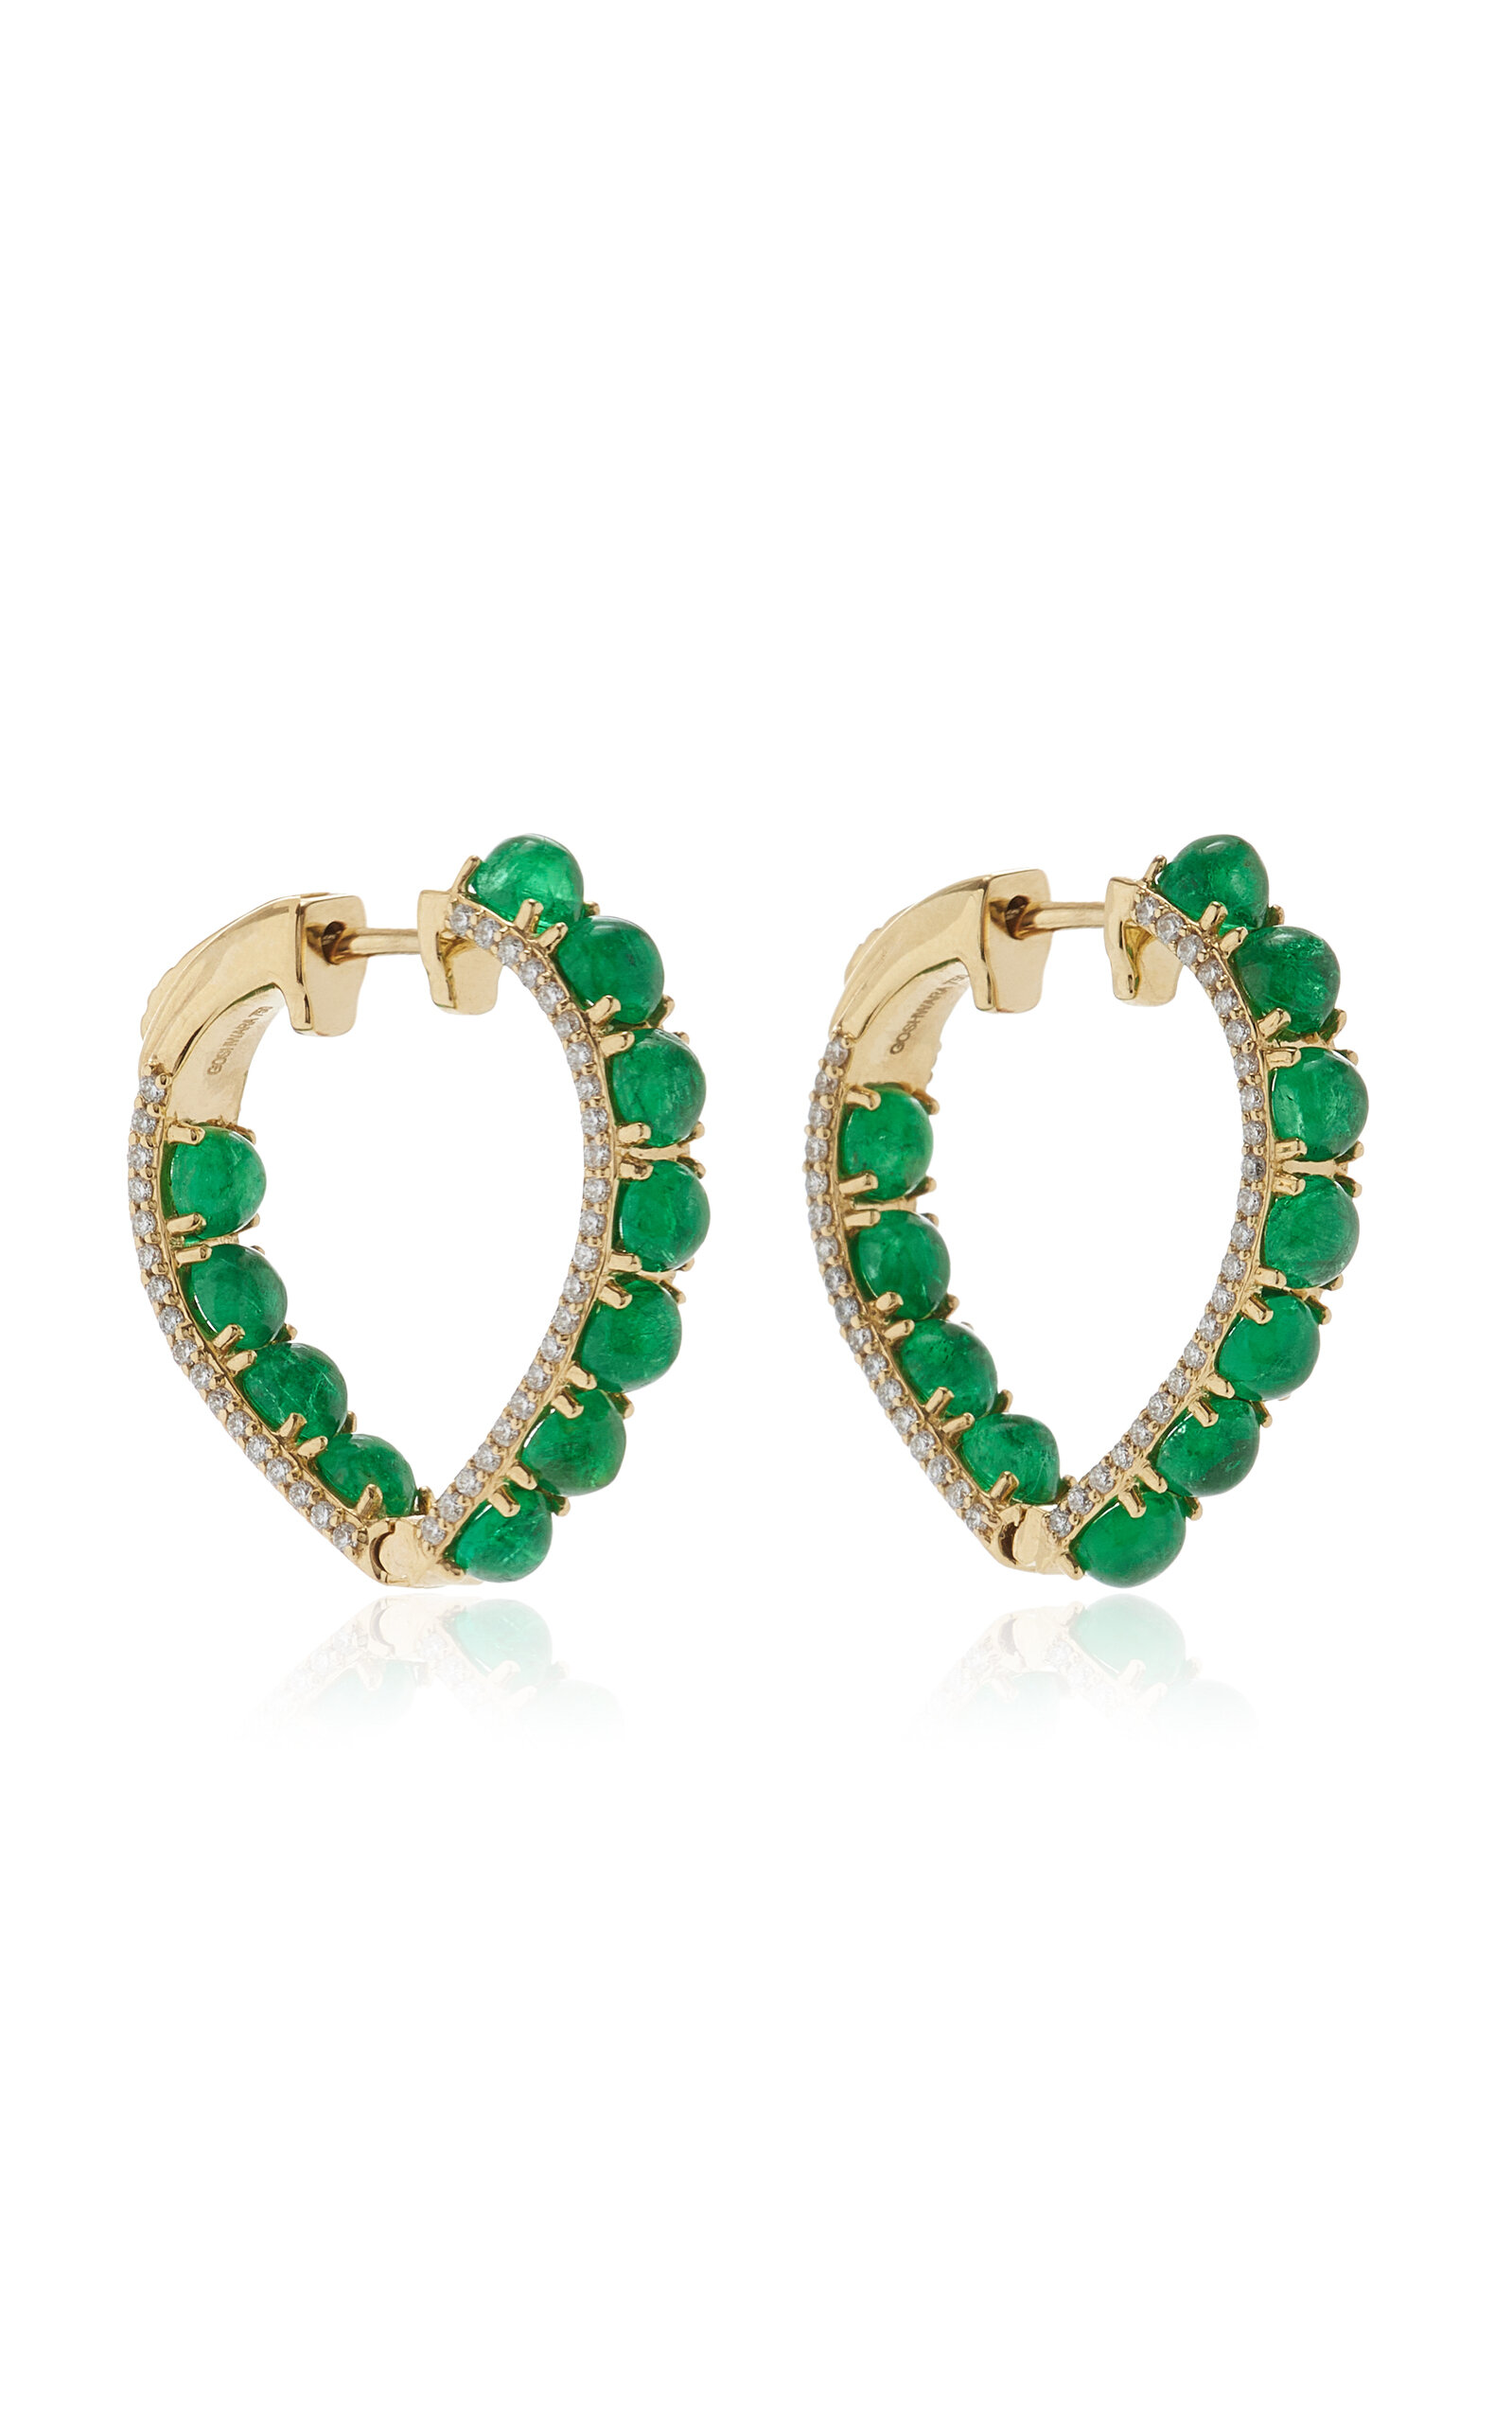 18K Yellow Gold Emerald and Diamond Hoop Earrings